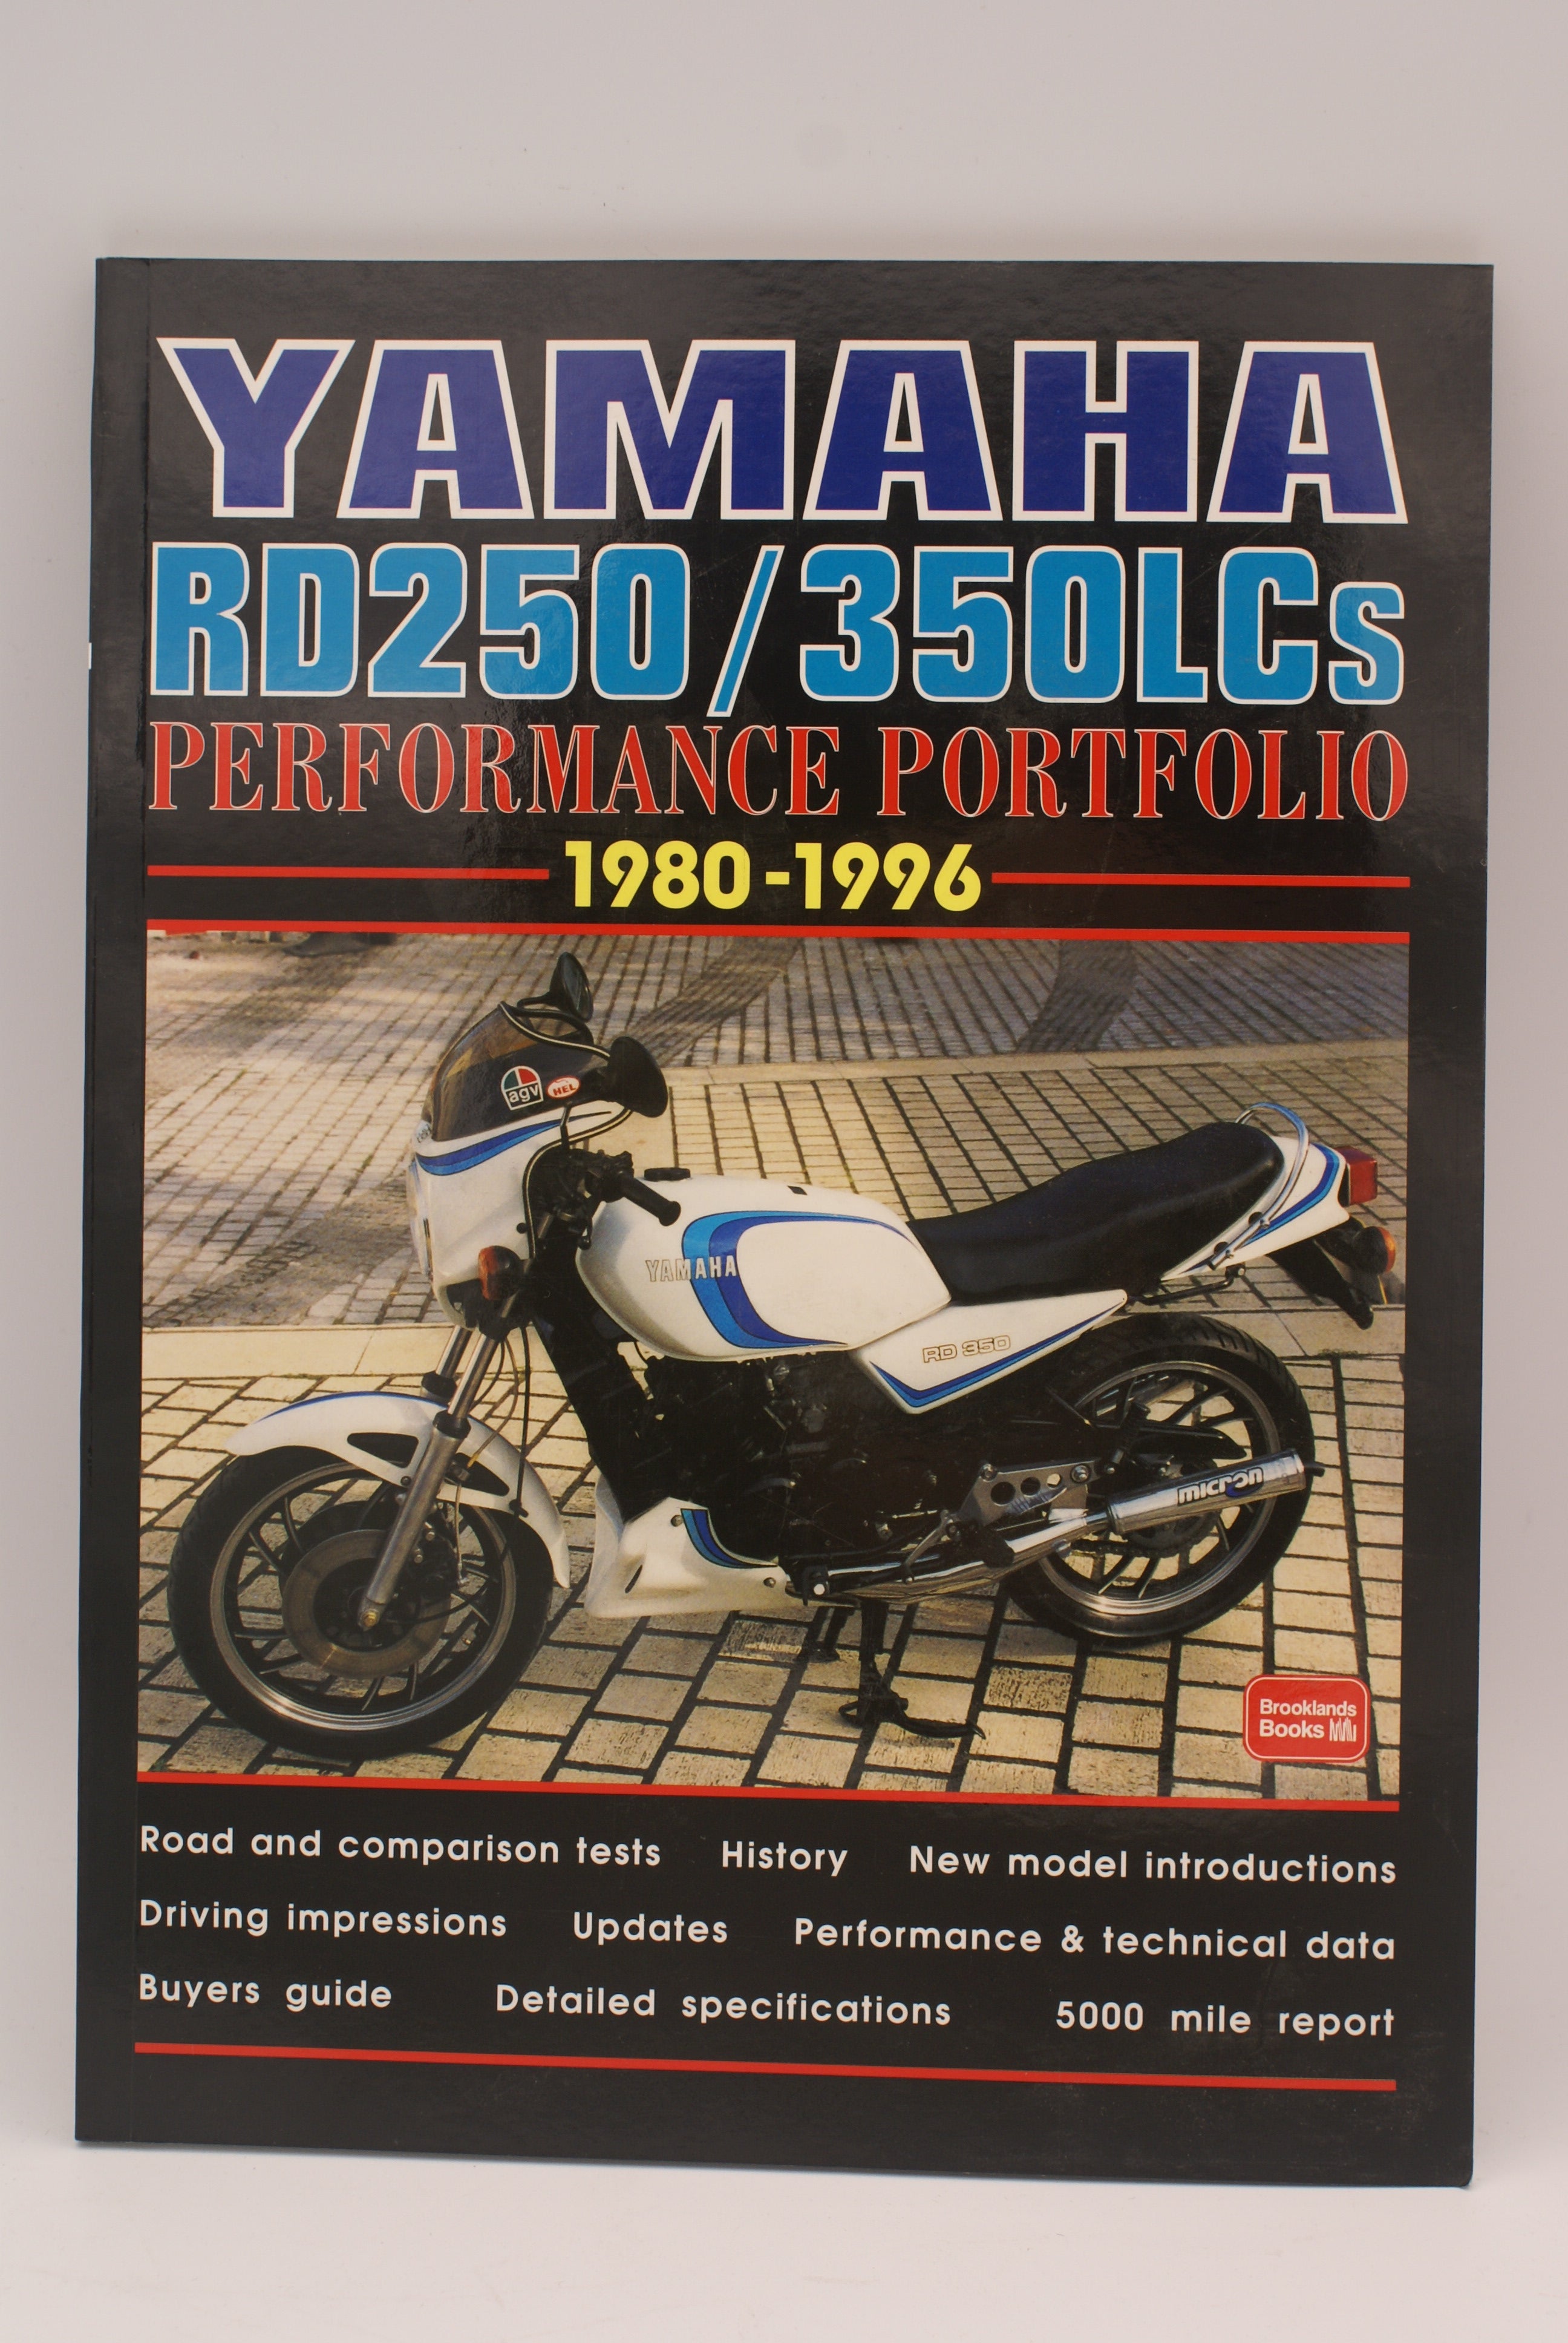 Yamaha RD250 / 350LCs